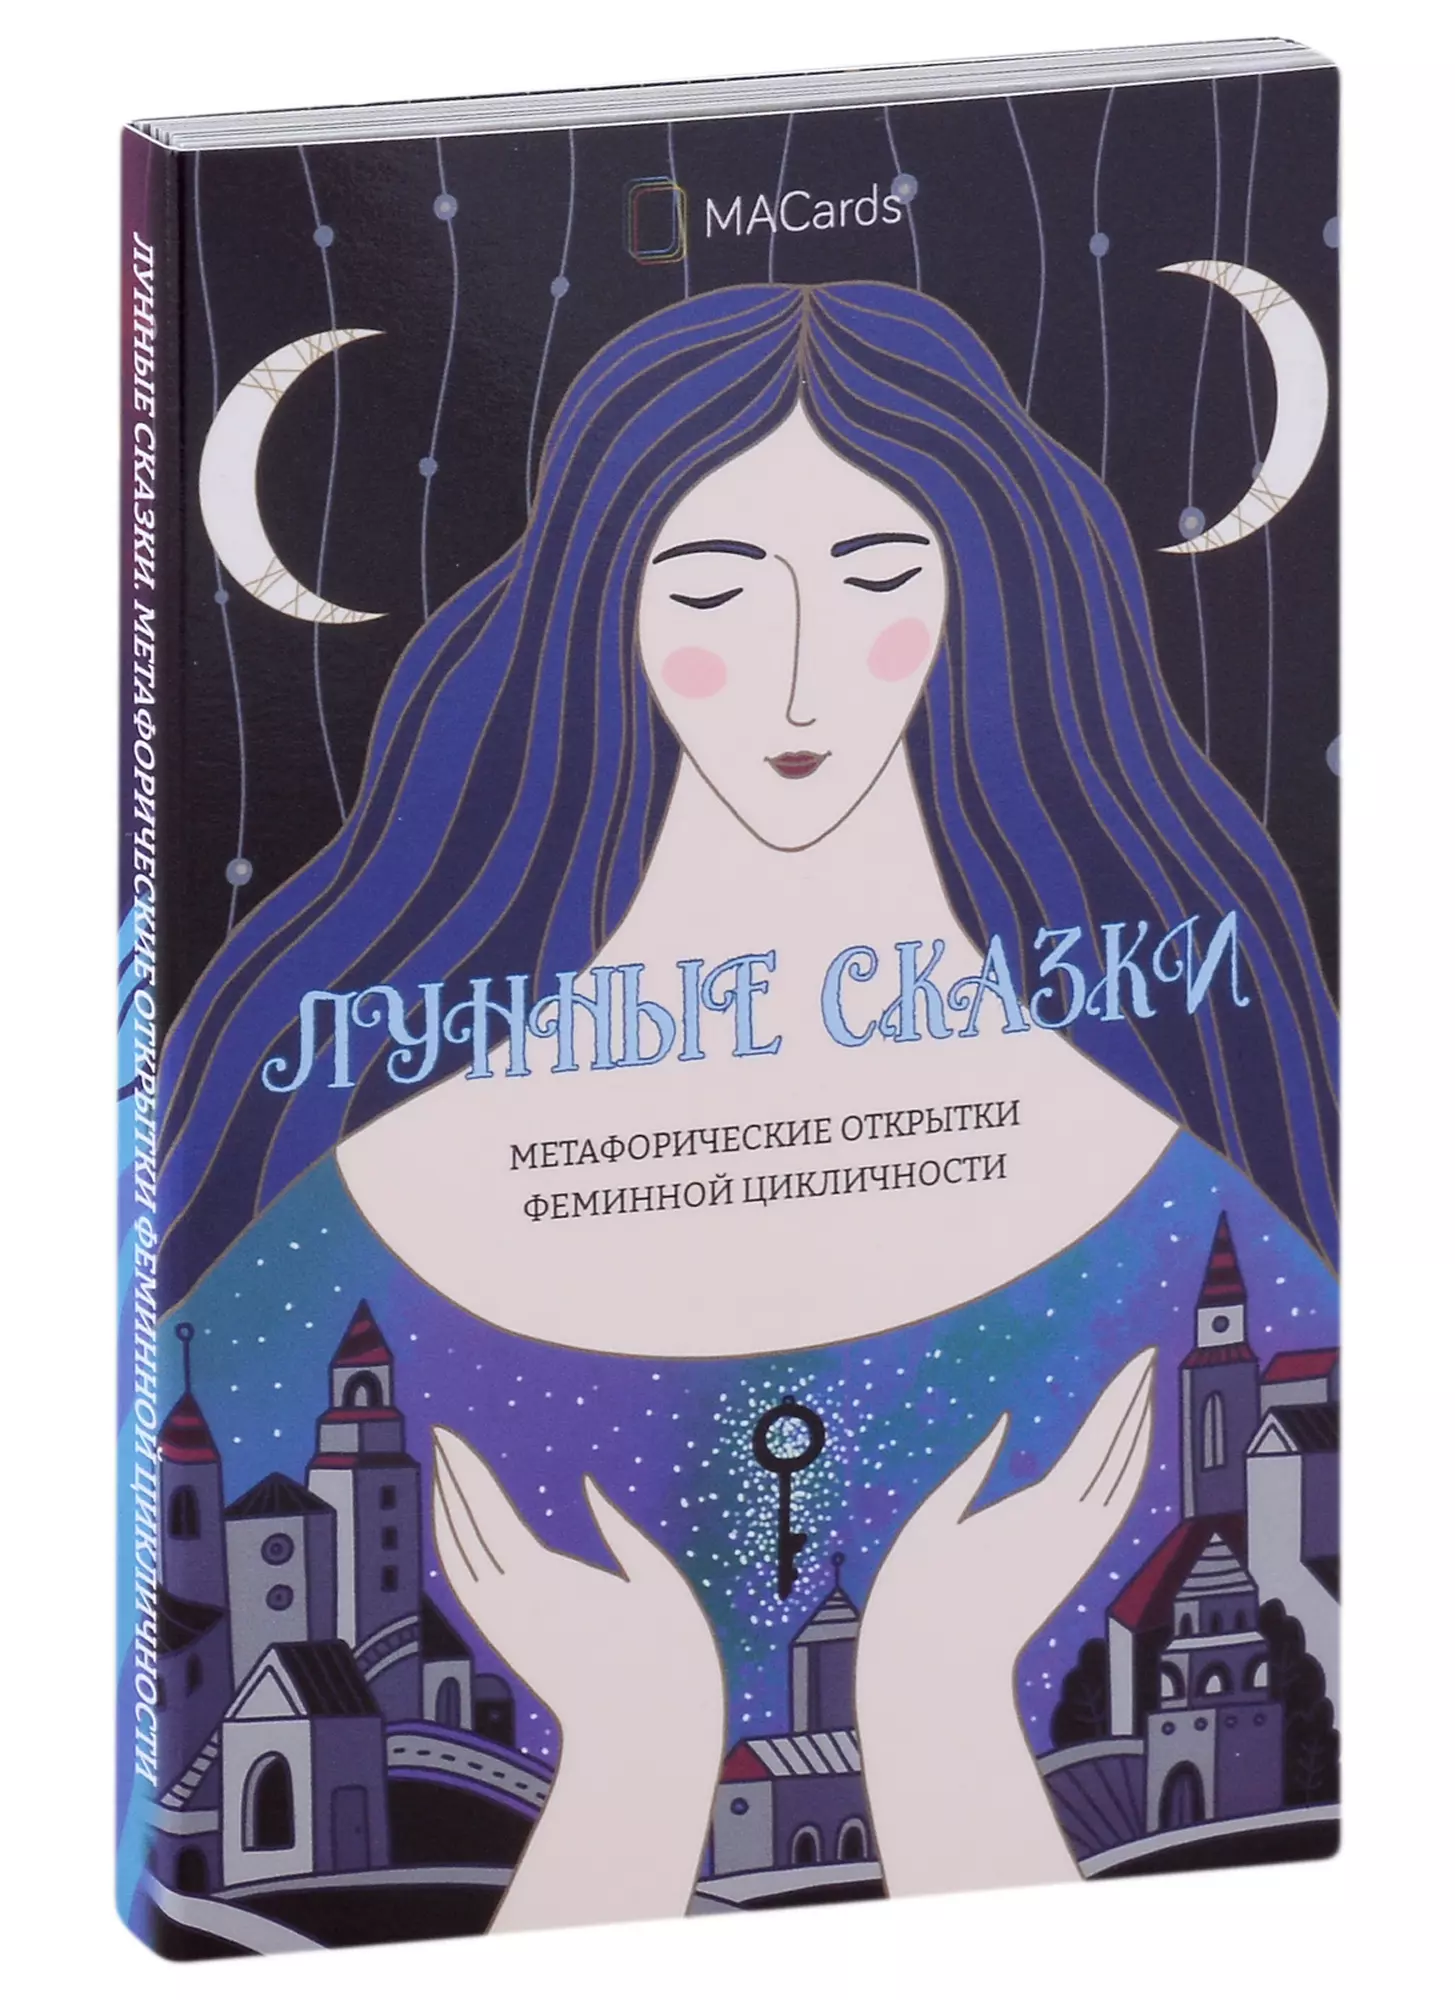 хомякова м метафорические открытки феминной цикличности лунные сказки Метафорические открытки феминной цикличности «Лунные сказки»